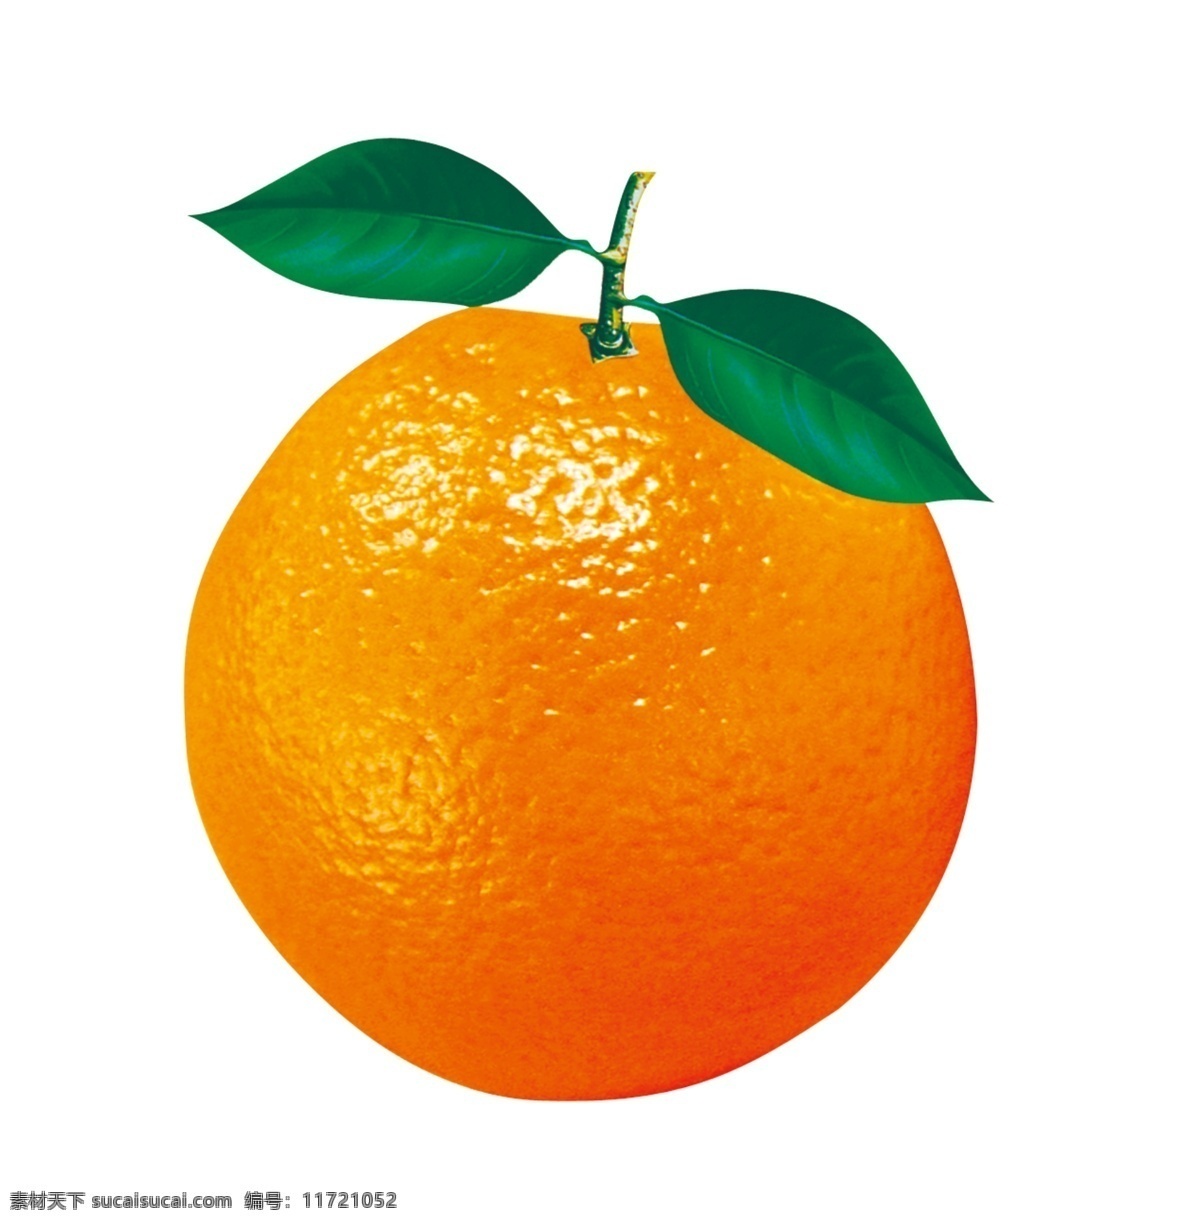 脐橙 橘子图片 高清 红色脐橙 橙子 包装设计